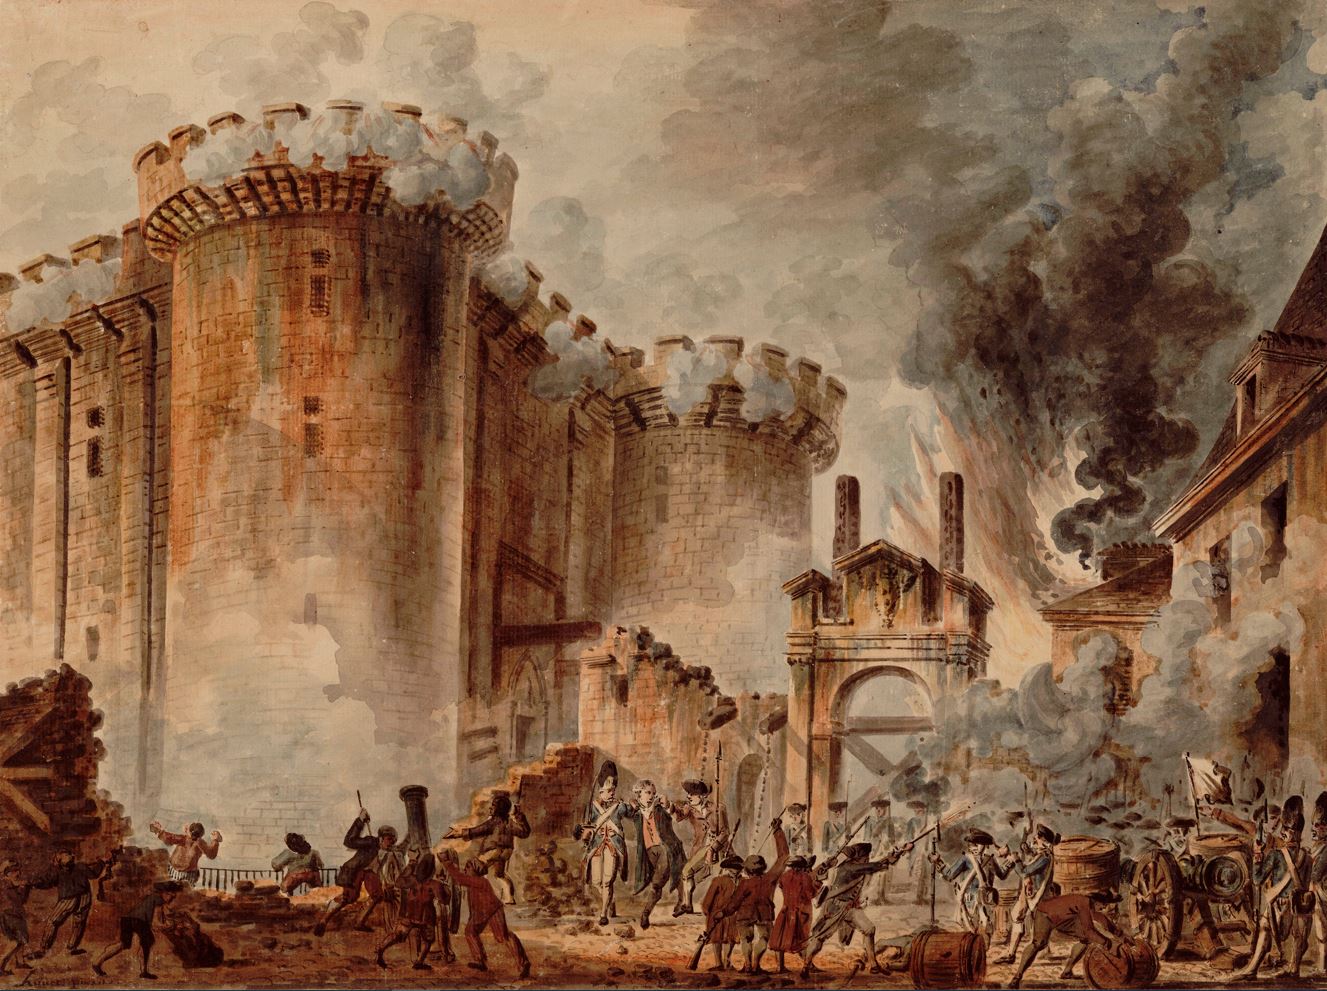 Η Γαλλική Επανάσταση ήταν περίοδος μεγάλων κοινωνικών και πολιτικών αναταραχών στη Γαλλία, που διήρκεσε από το 1789 έως το 1799. Άλωση της Βαστίλης, 14 Ιουλίου 1789.